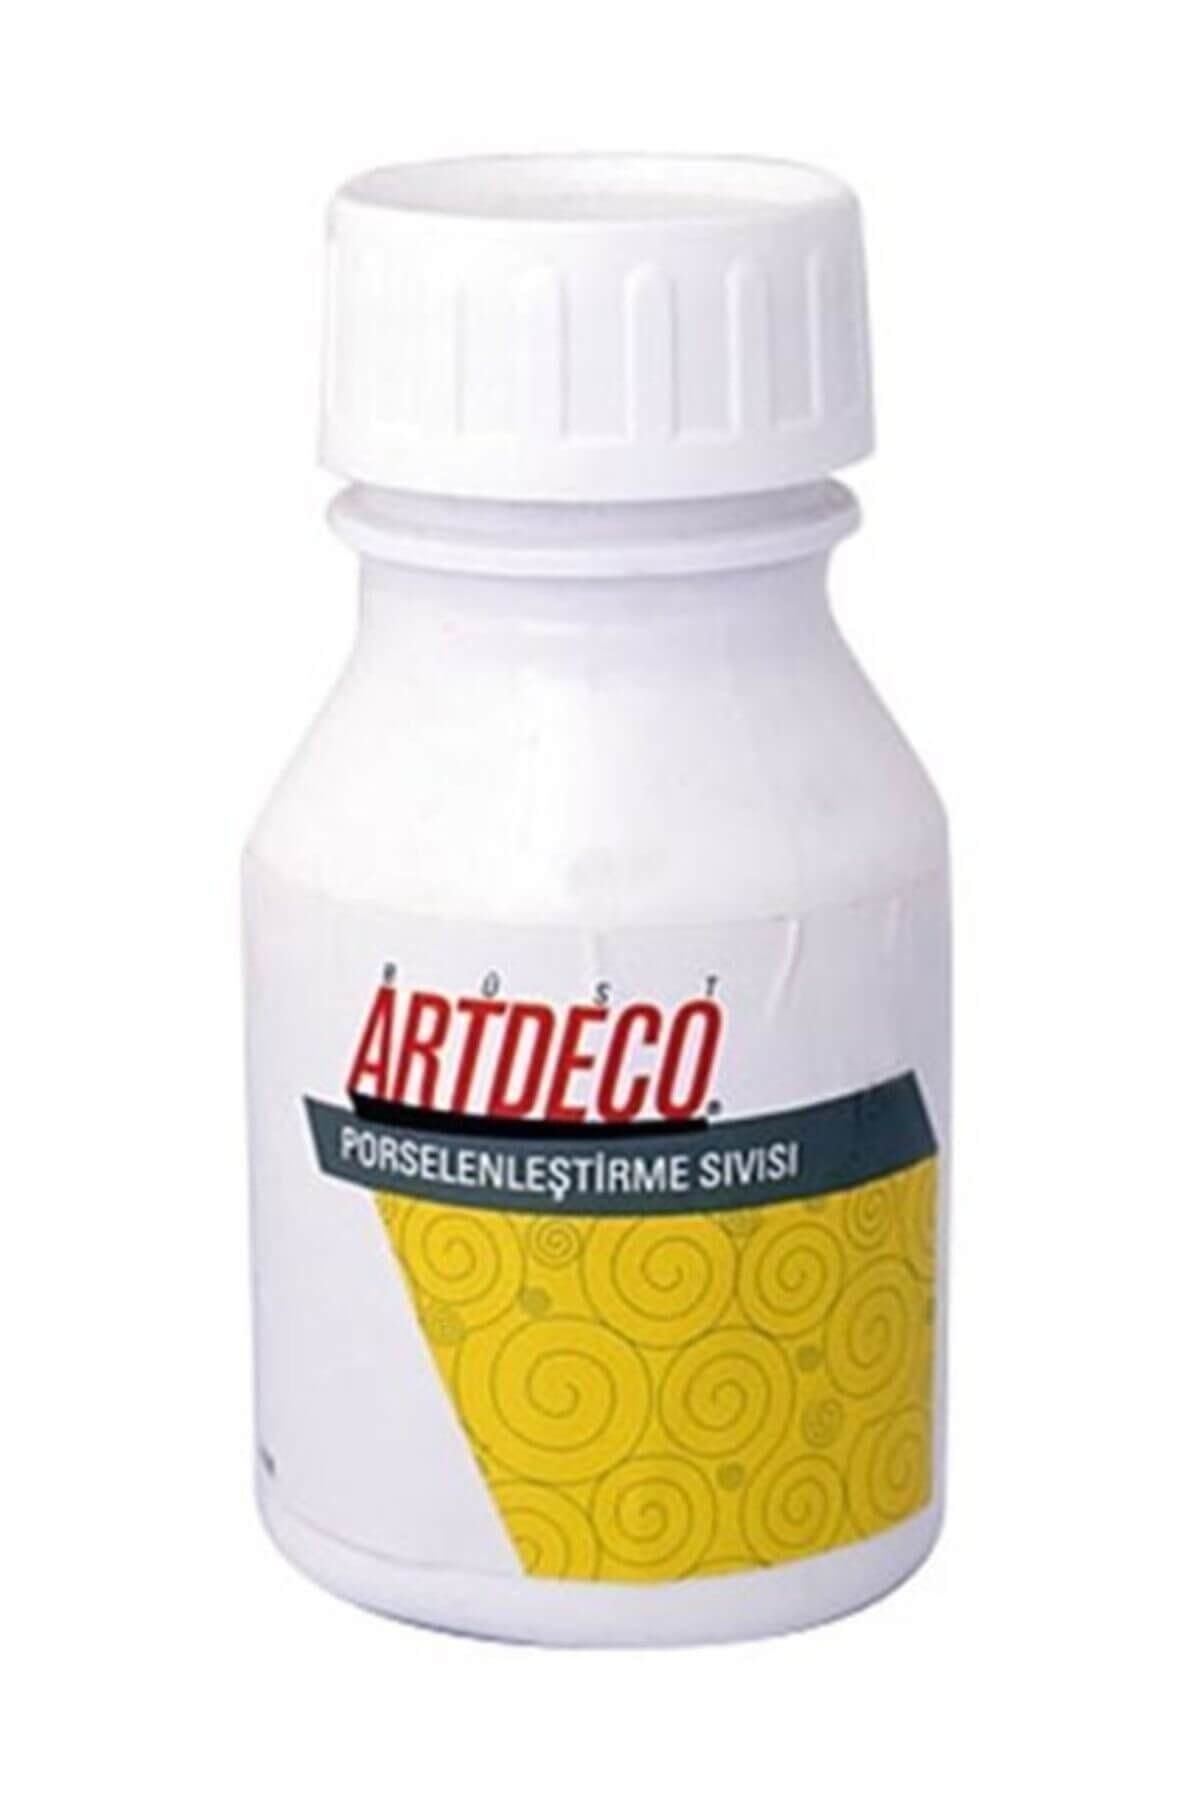 Artdeco Porselenleştirme Sıvısı 220 ml.